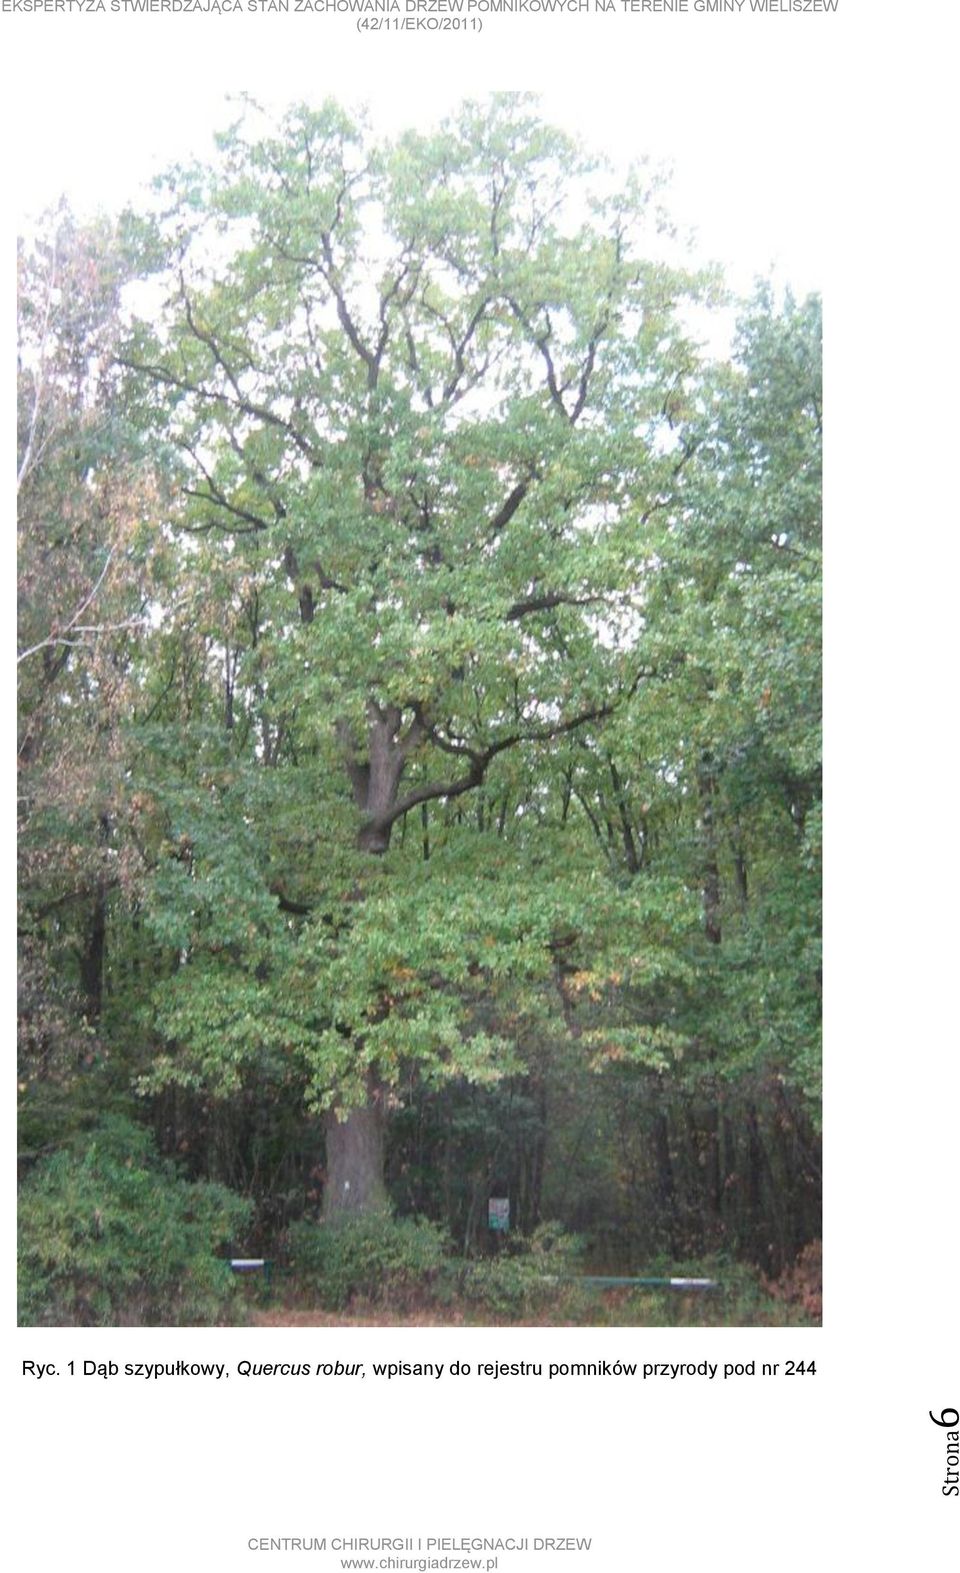 Quercus robur, wpisany